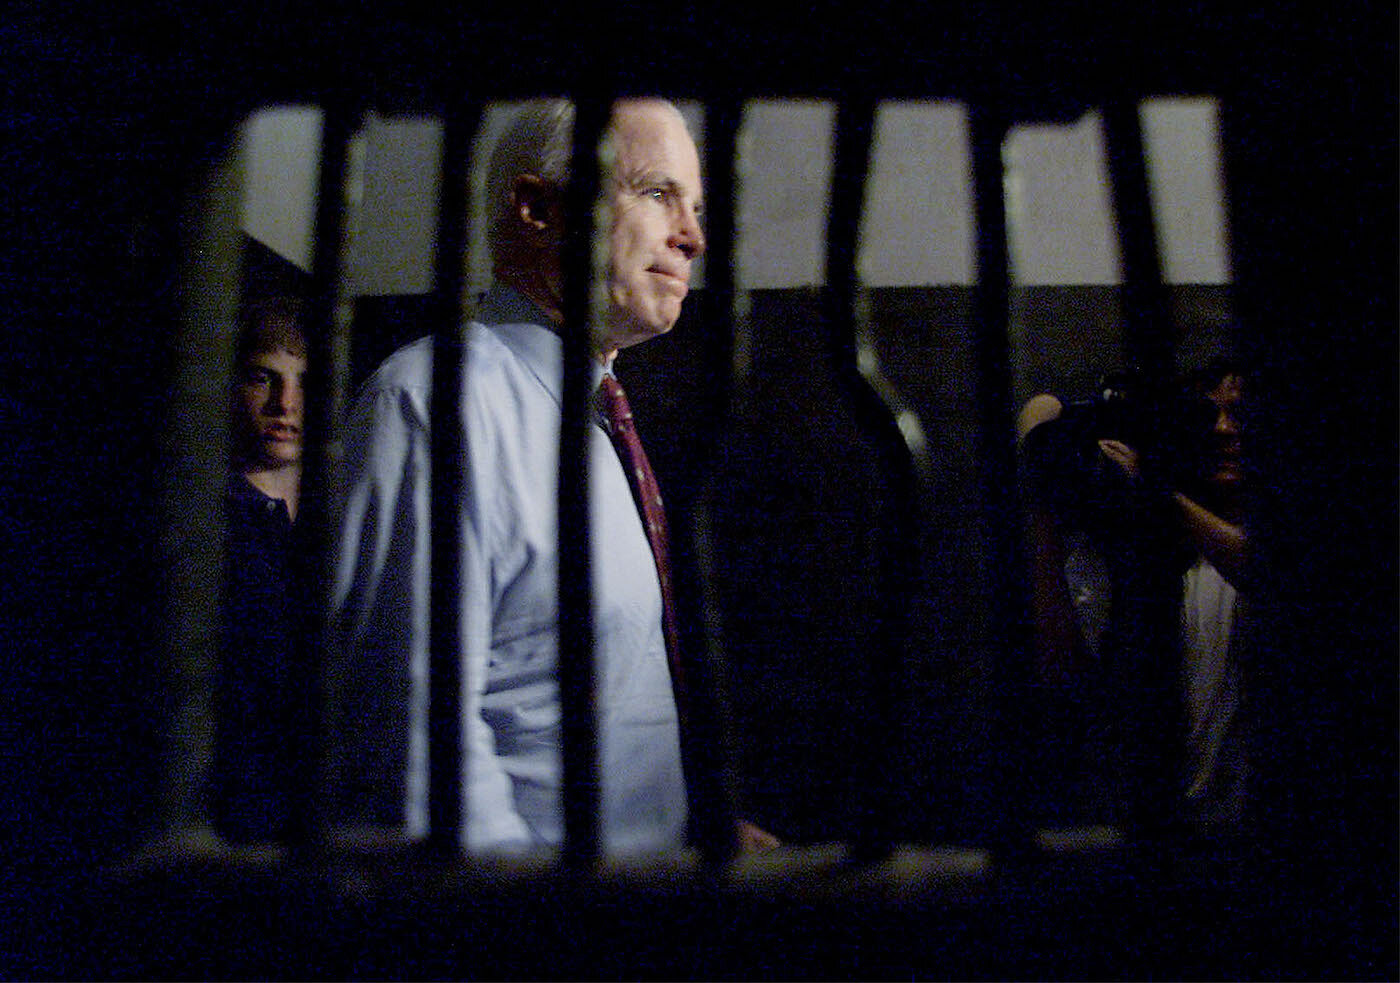 <p>26 апреля 2000 года. Джон Маккейн проходит мимо тюремных камер в Ханое, в одной из которых сидел он, будучи военнопленным</p>